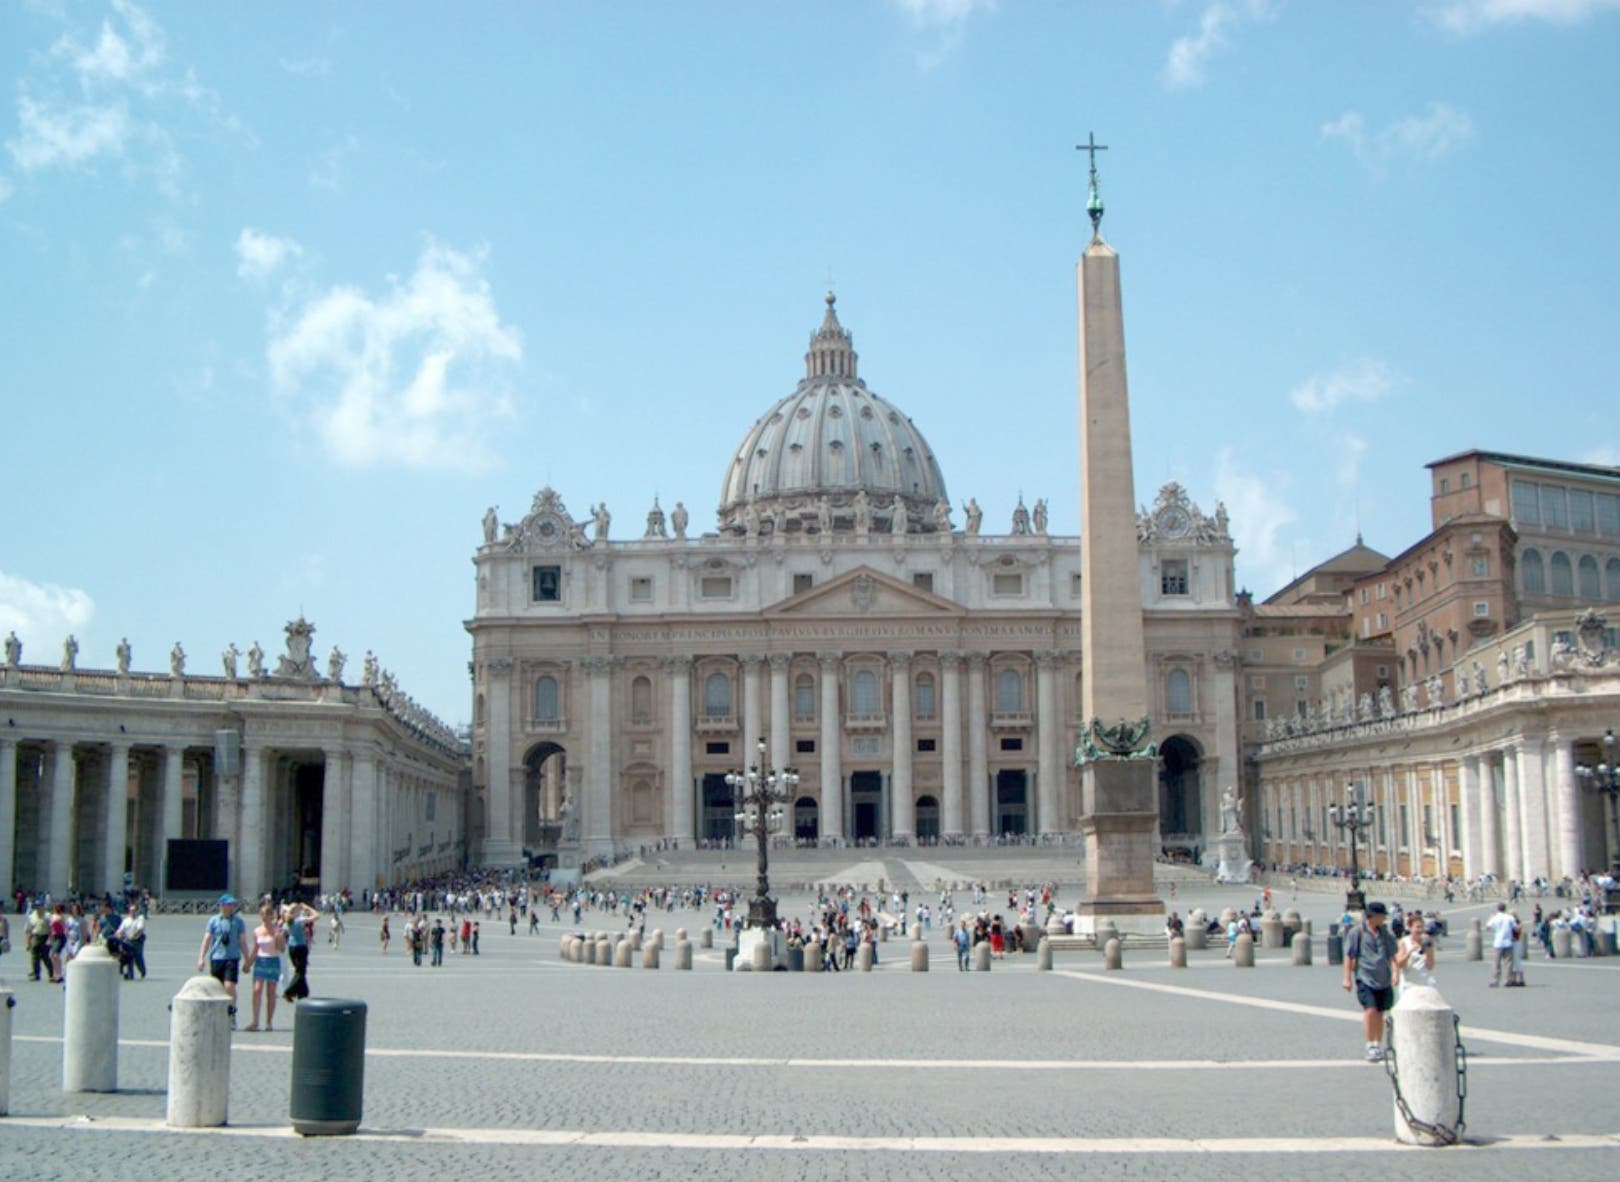 El Vaticano se negó a identificar al diplomático, pero dijo que se encontraba en la sede apostólica, cuyos fiscales habían iniciado su propia investigación.